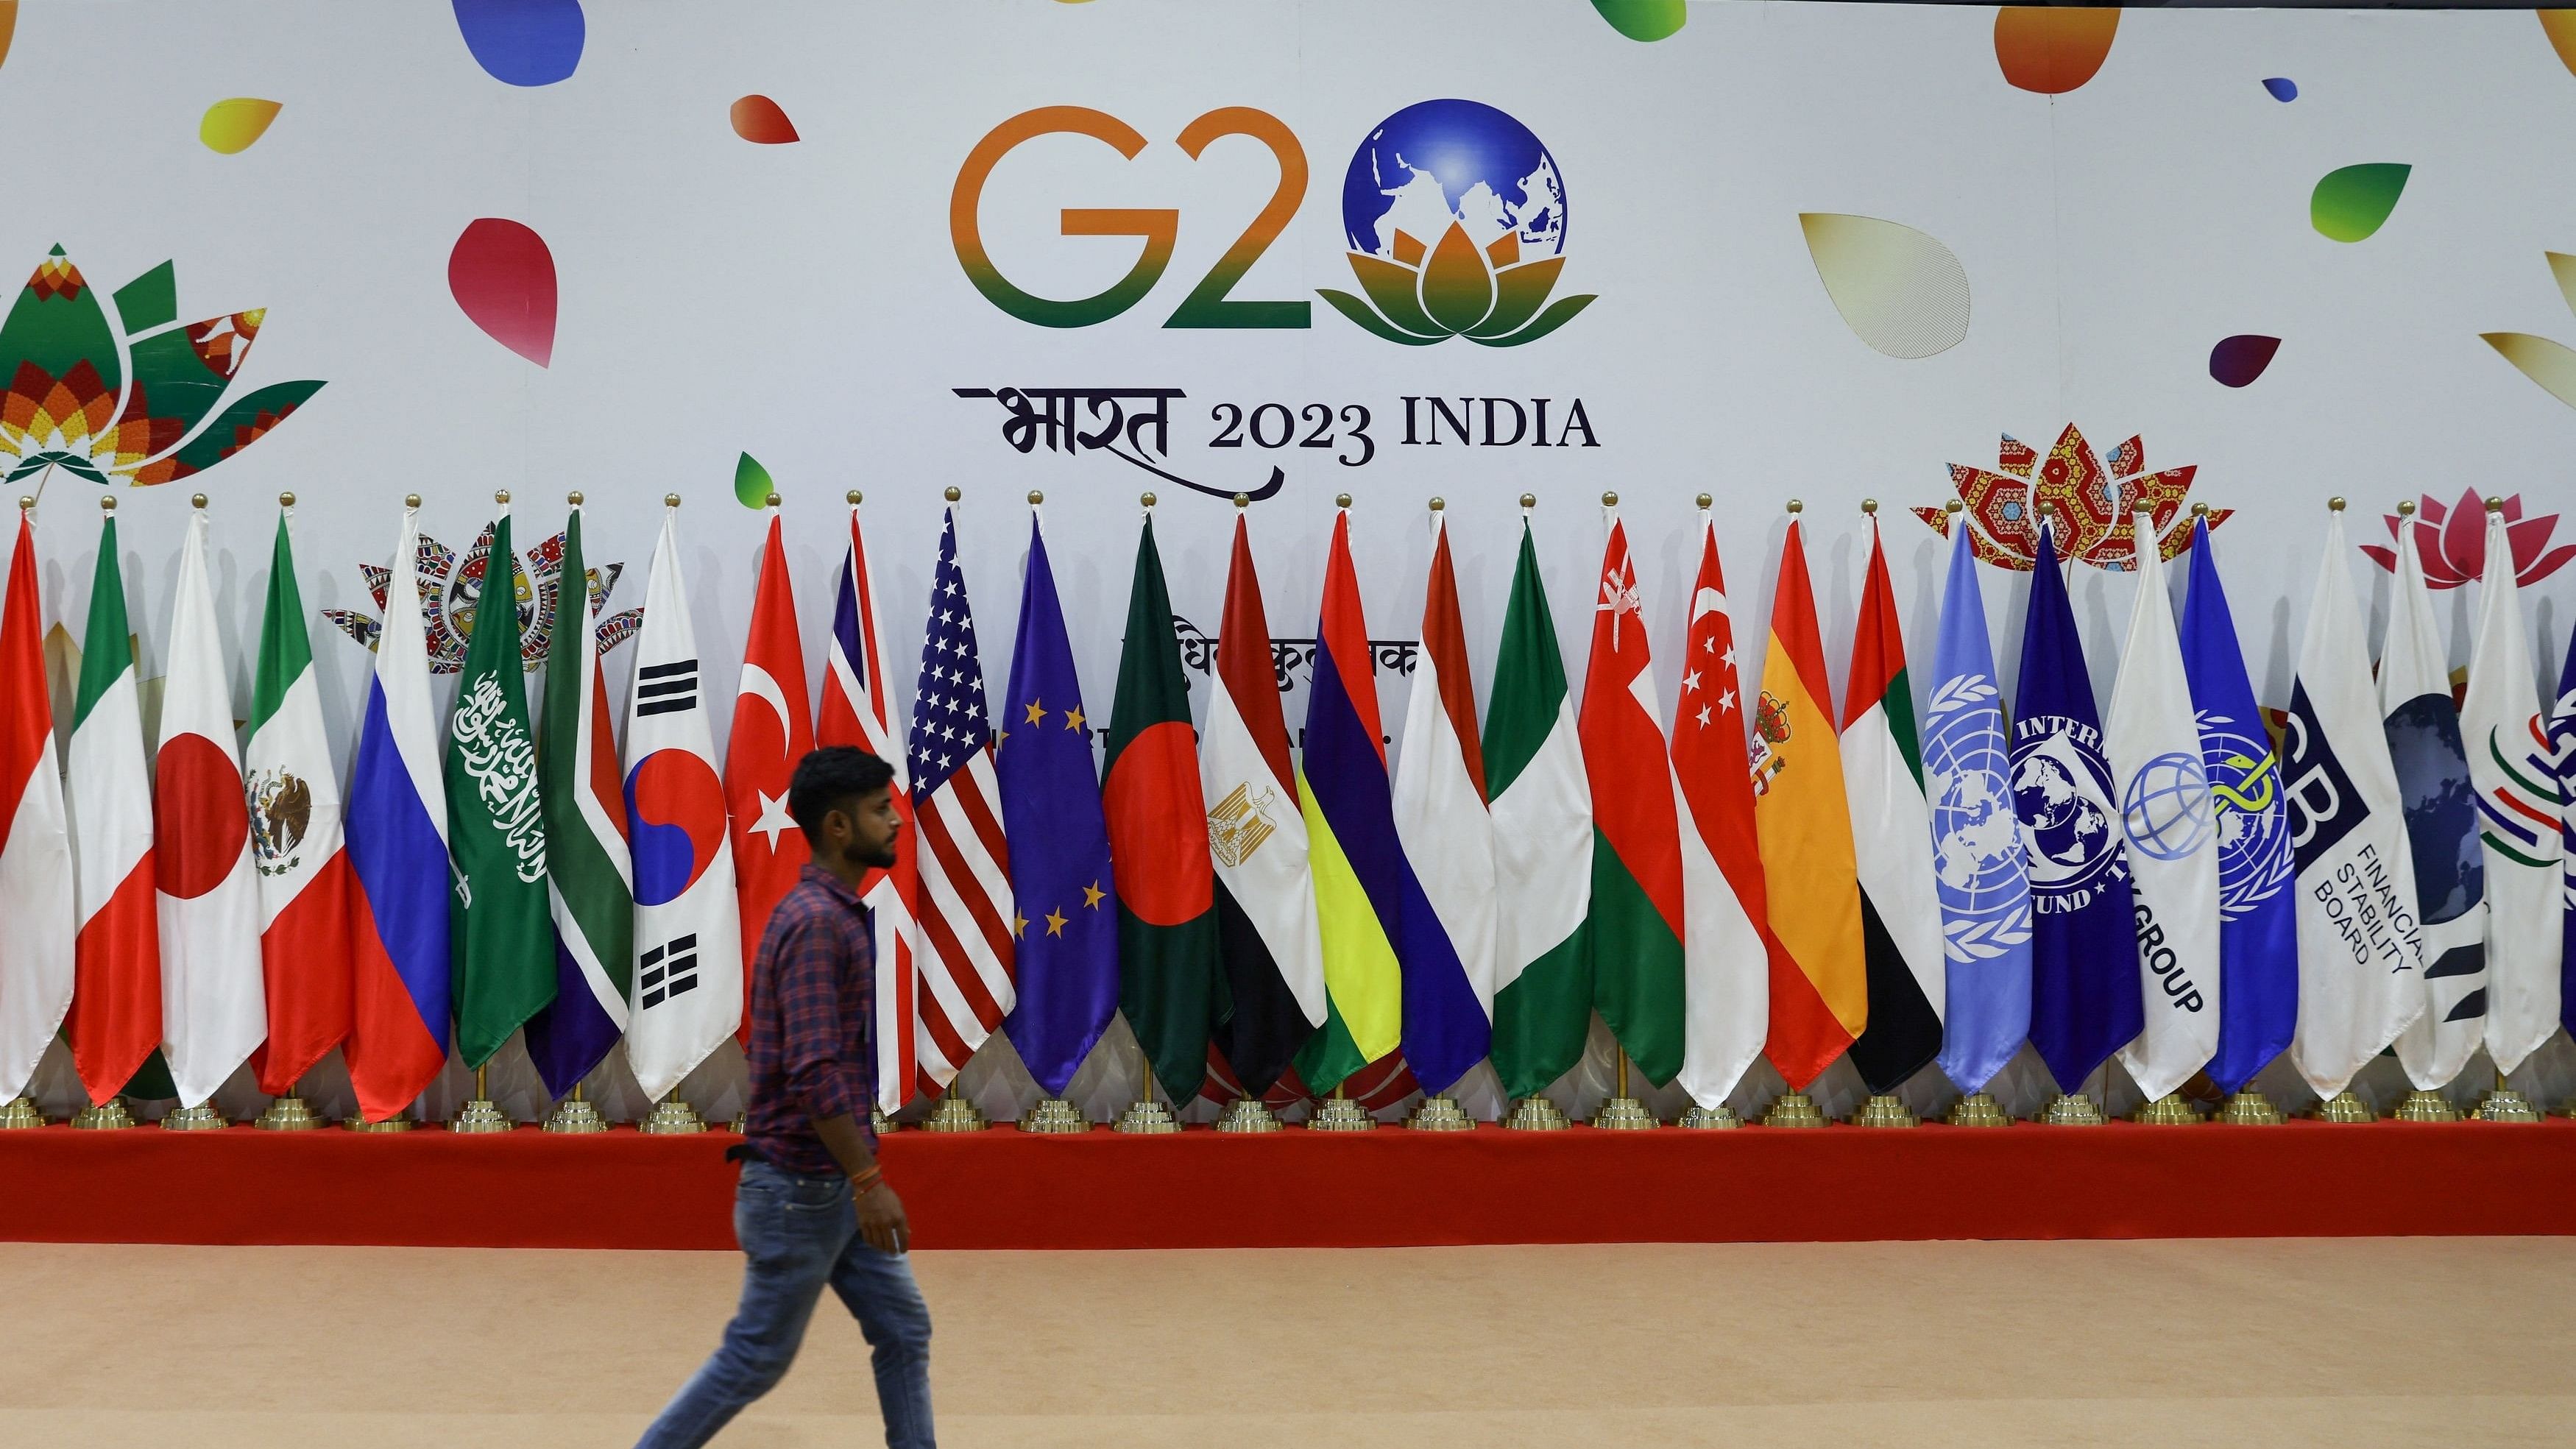 <div class="paragraphs"><p>A man walks near flags ahead of G20 Summit in New Delhi.</p></div>